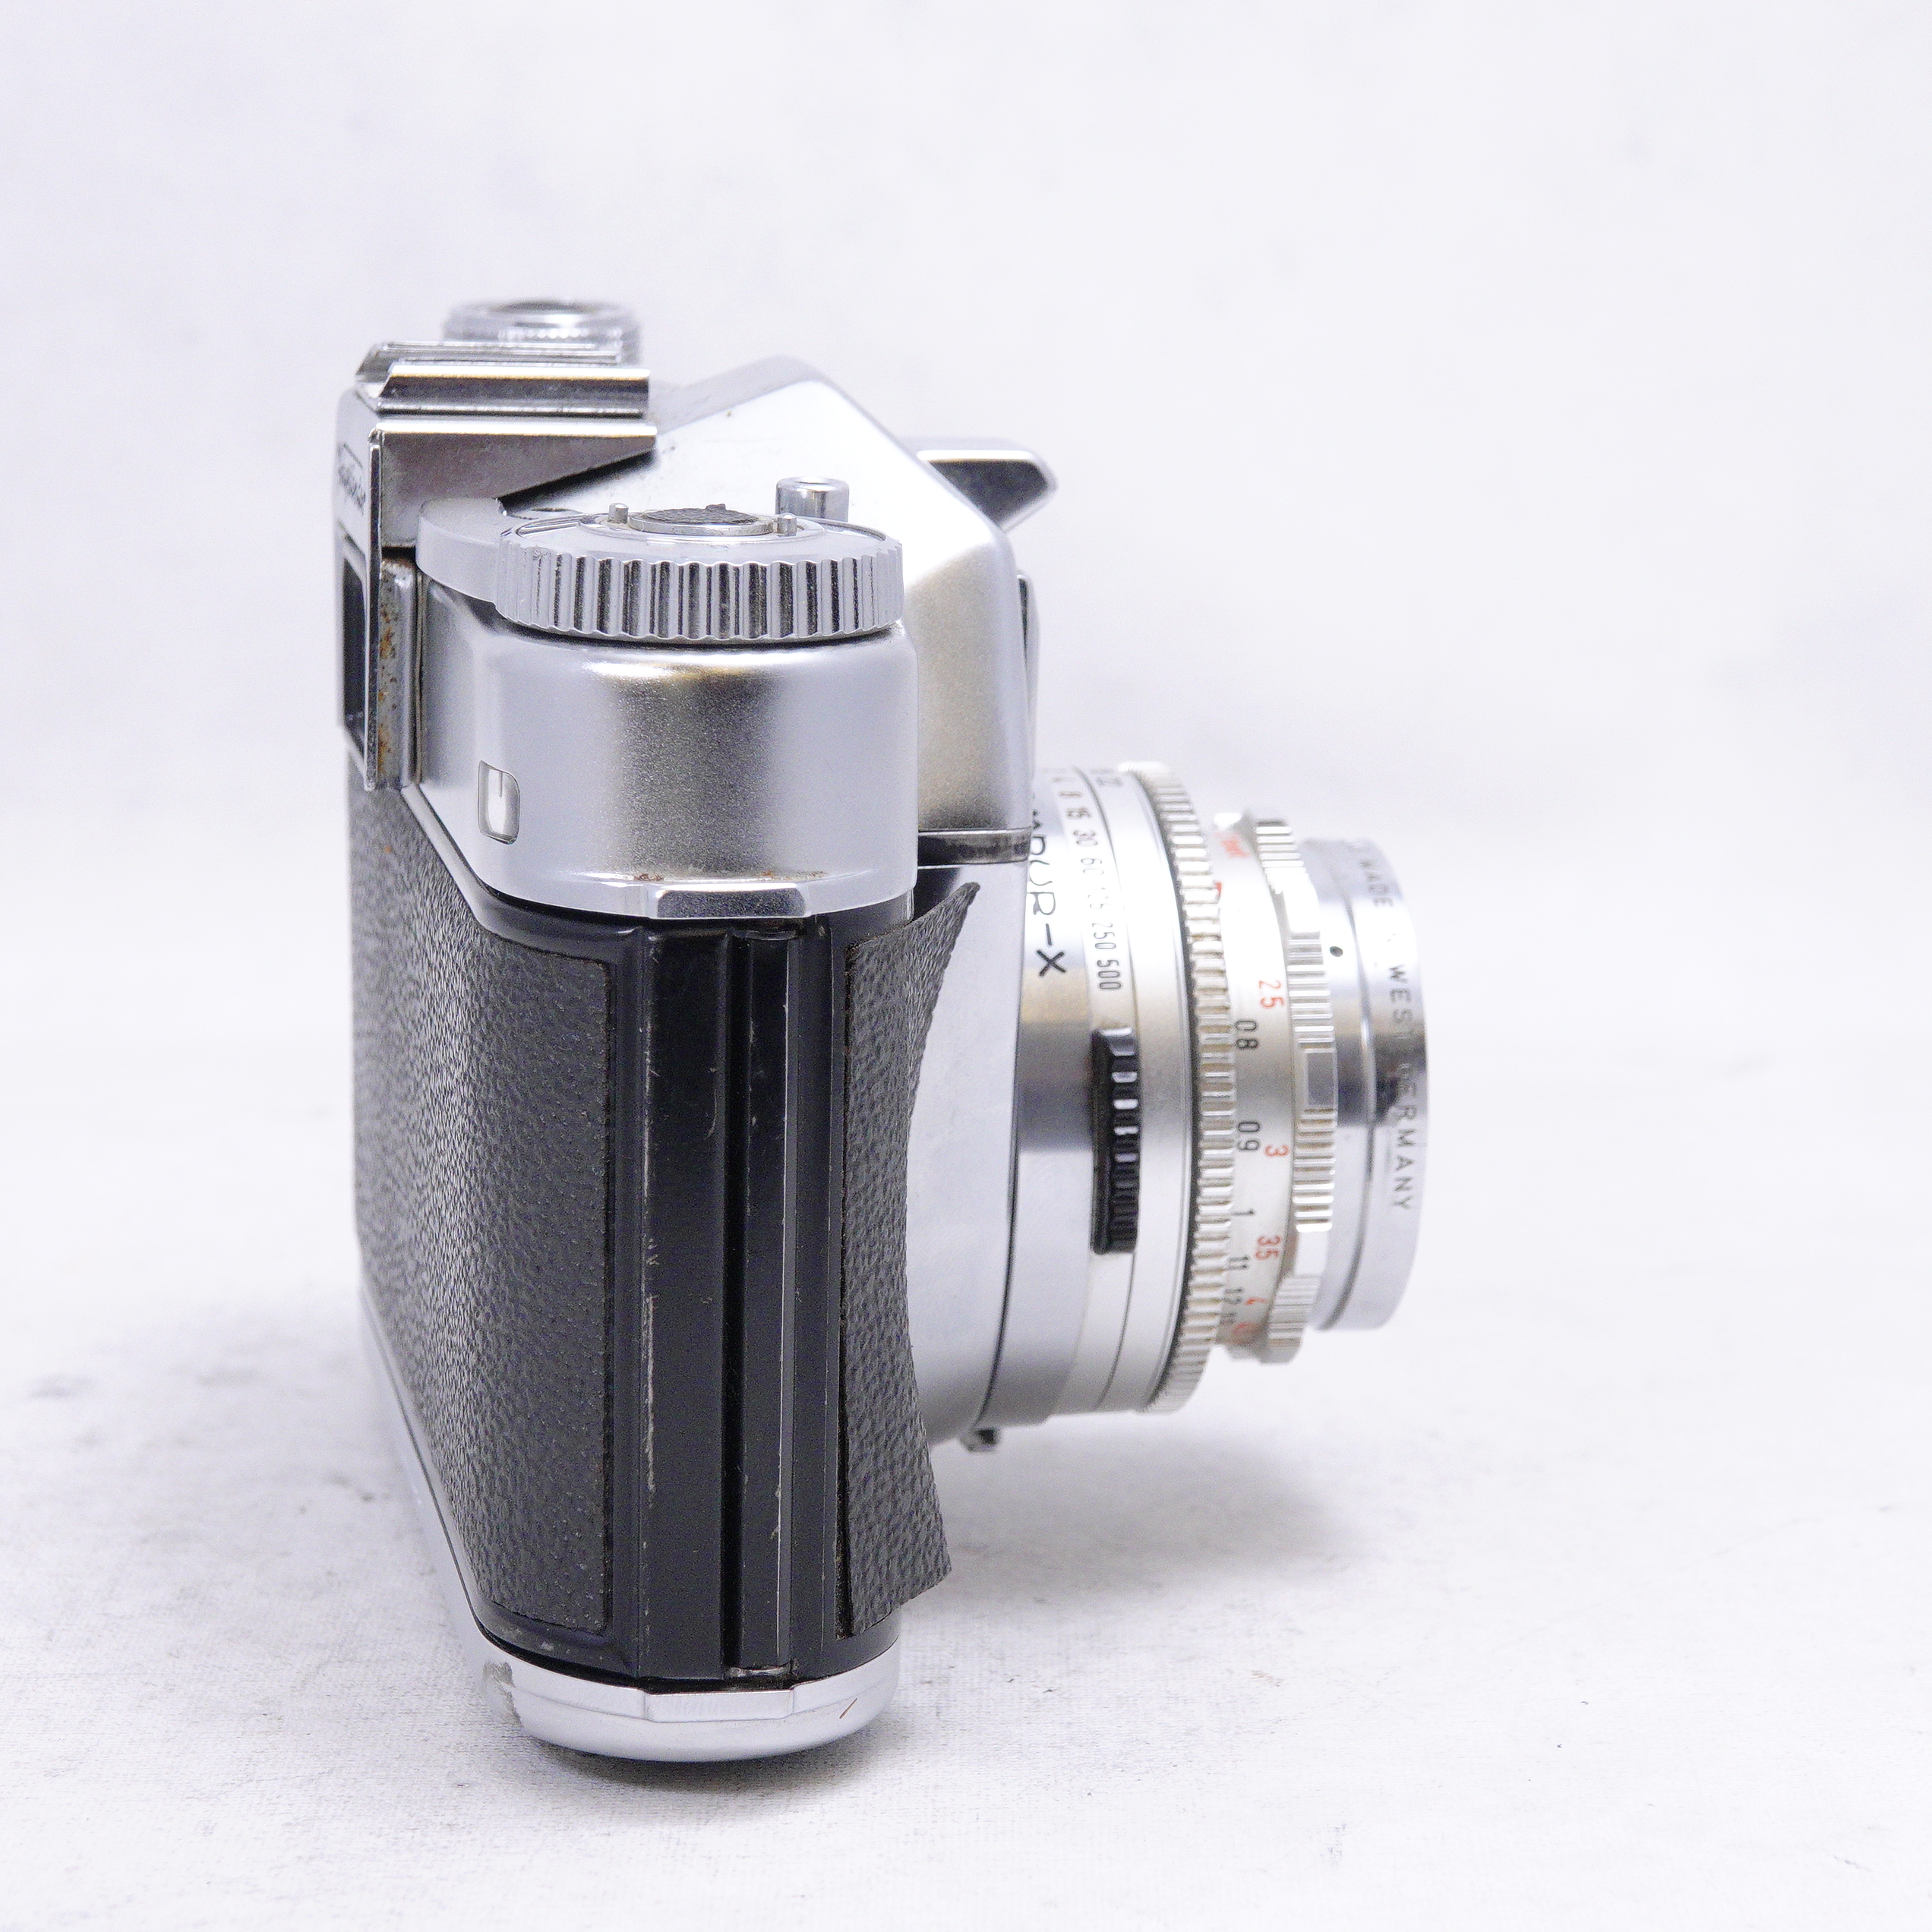 Voigtlander Bessamatic con lentes 50mm F2.8 y 135mm F/4 - Usado